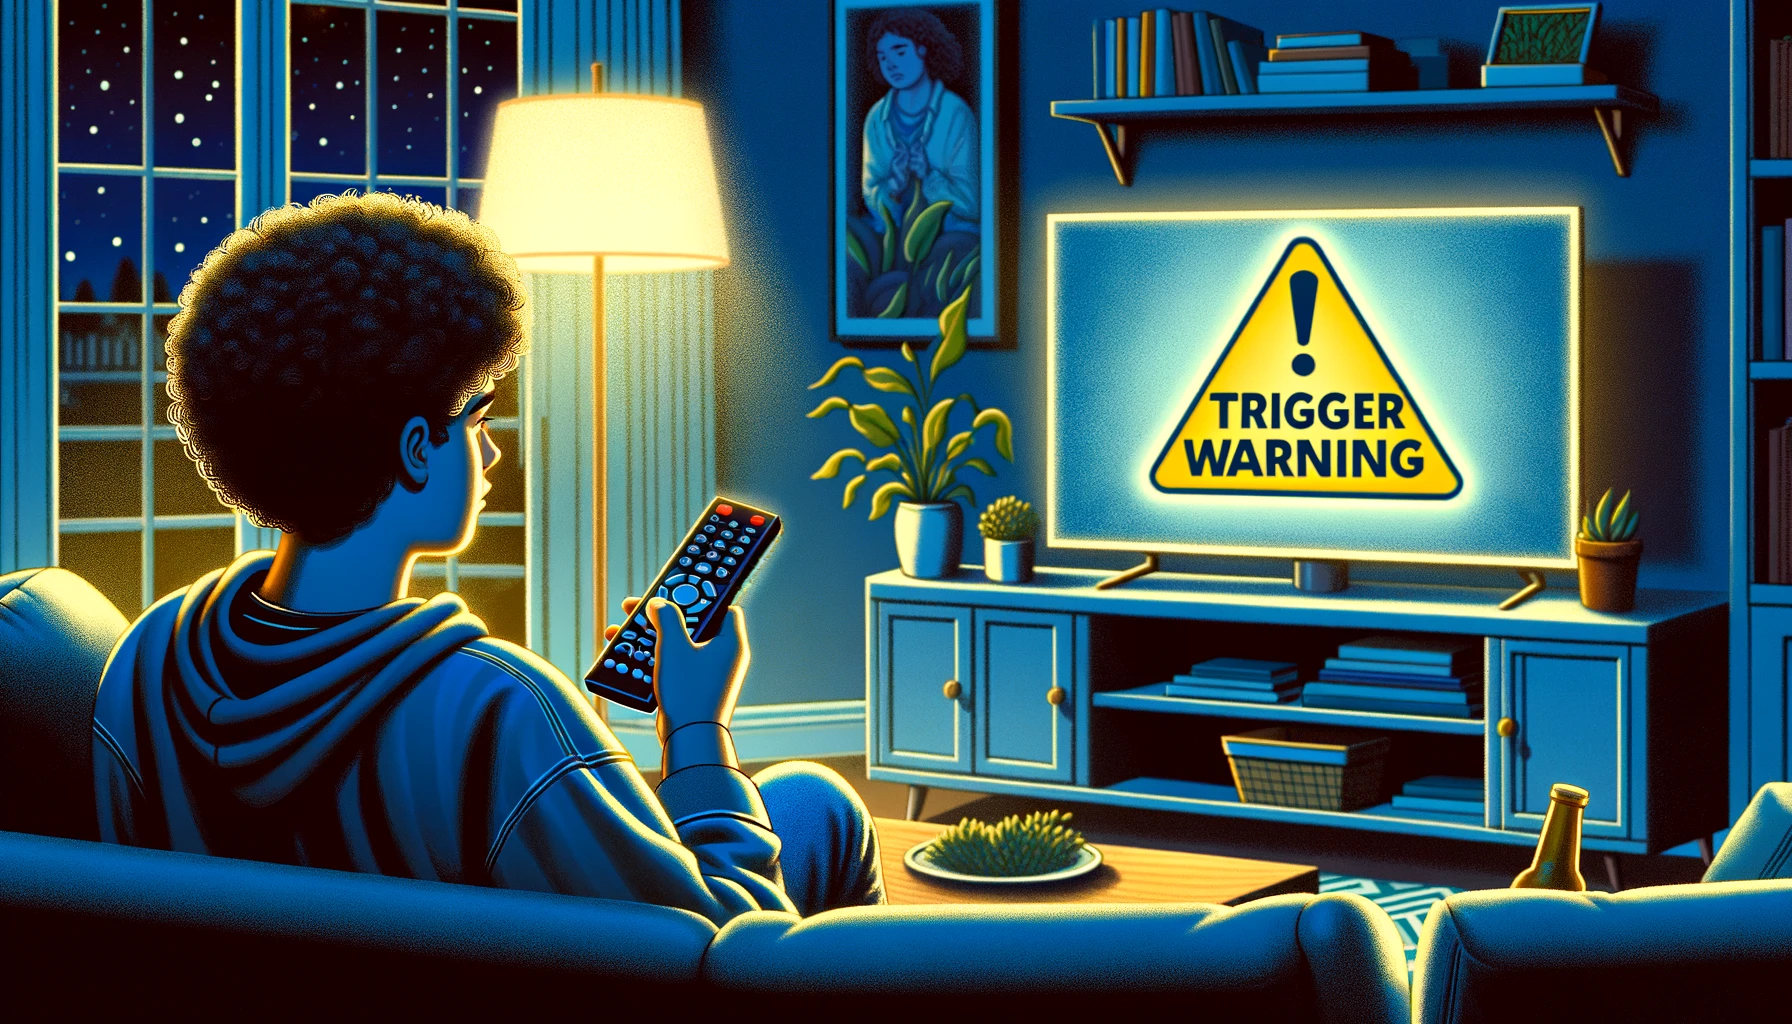 Le Avvertenze funzionano? Una meta-analisi ci dice che i Trigger Warnings ci Triggerano!